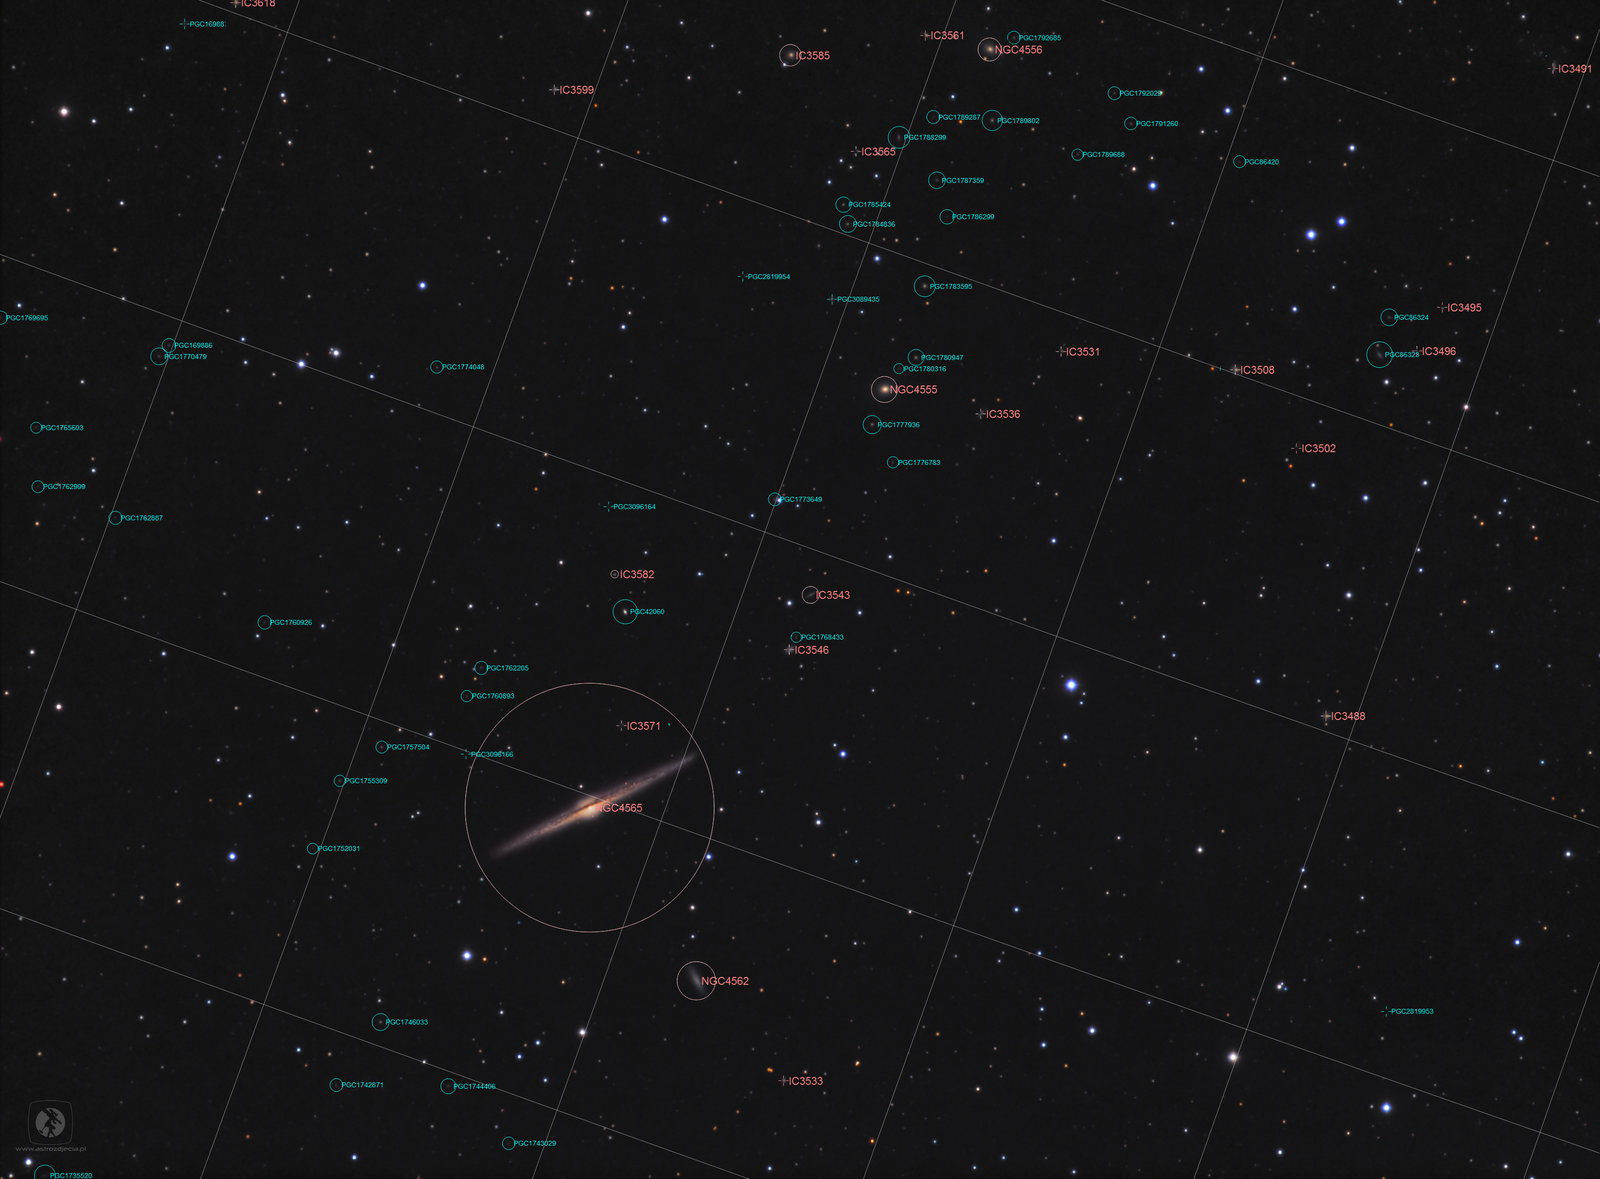 05-NGC4565-opis.thumb.jpg.92774c82a1bcabc54d8a71c2337f5262.jpg